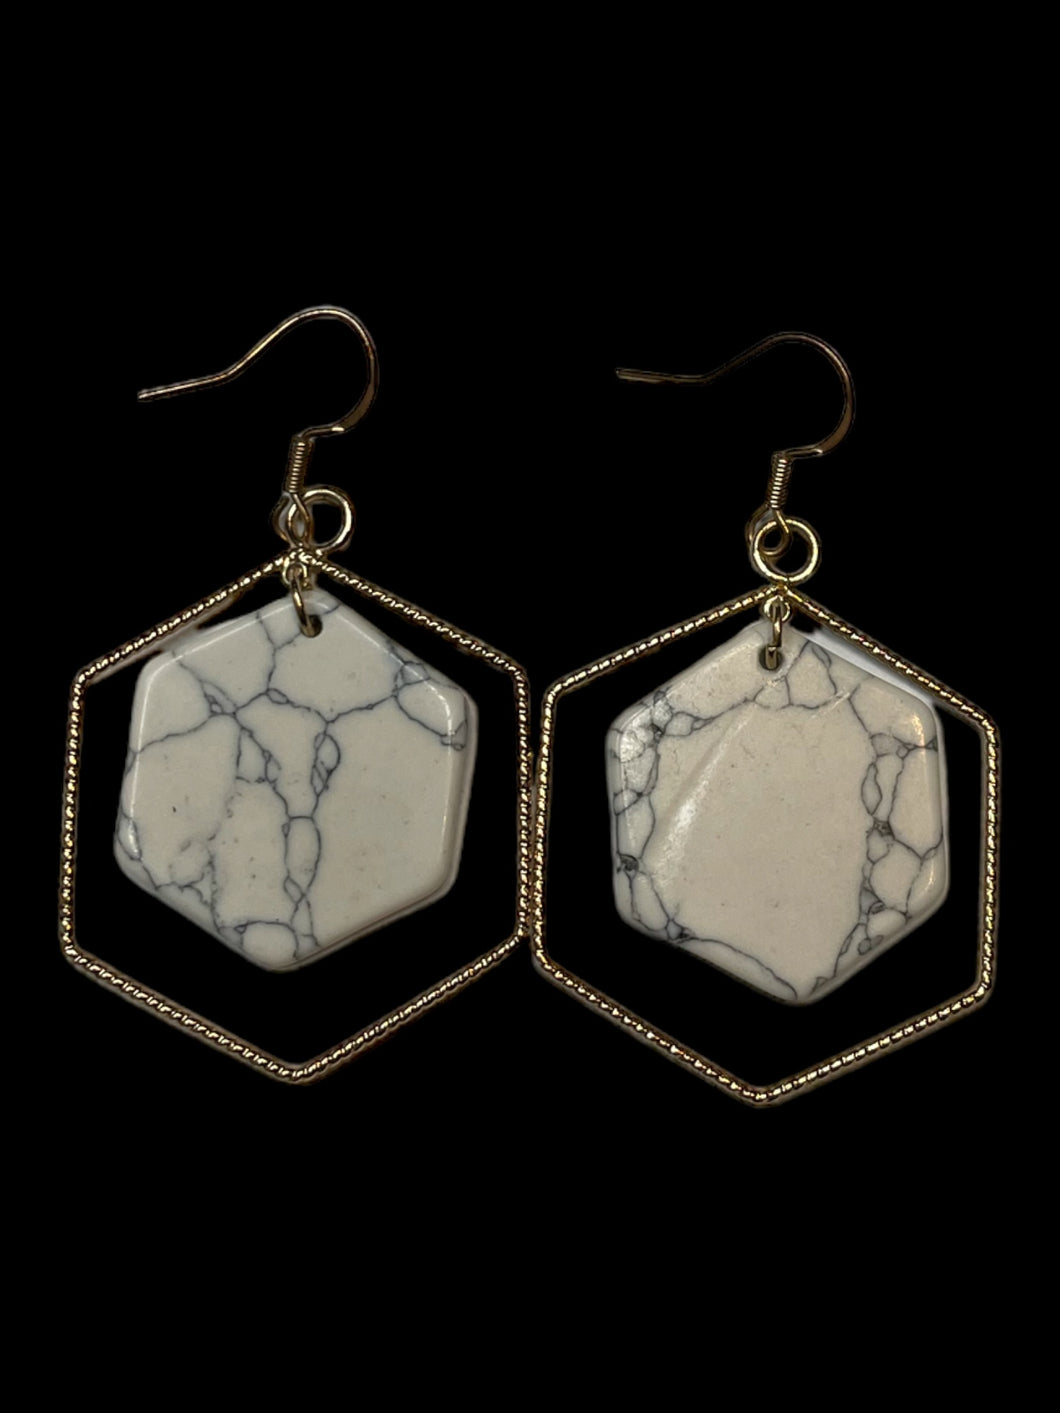 Hexagonal gold-like frame & white marble hexagon plate wire hook earrings